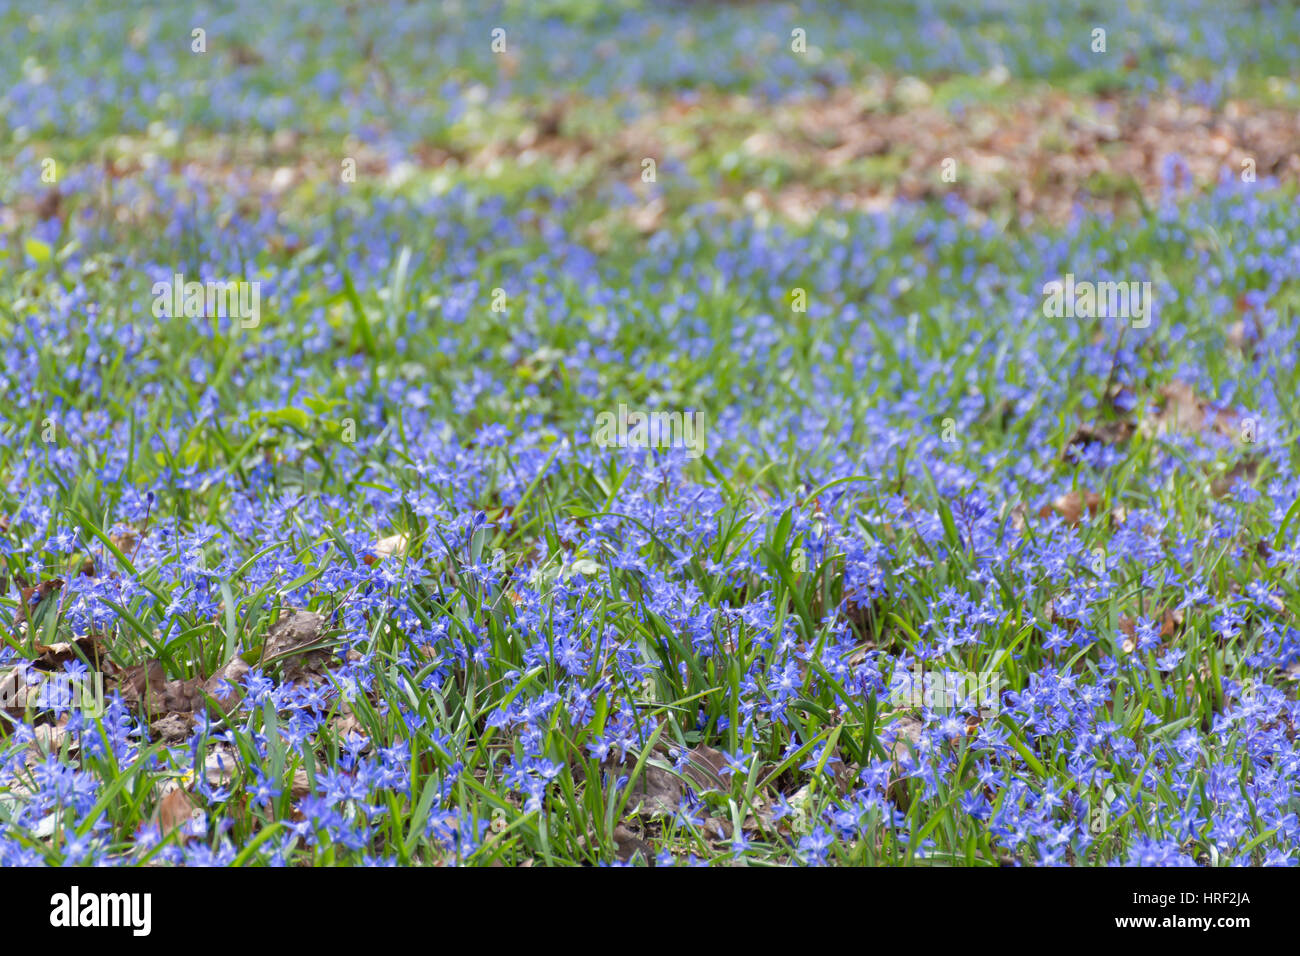 A carpet of blue wild flowers in a park. Tiergarten, Berlin, Germany Stock Photo